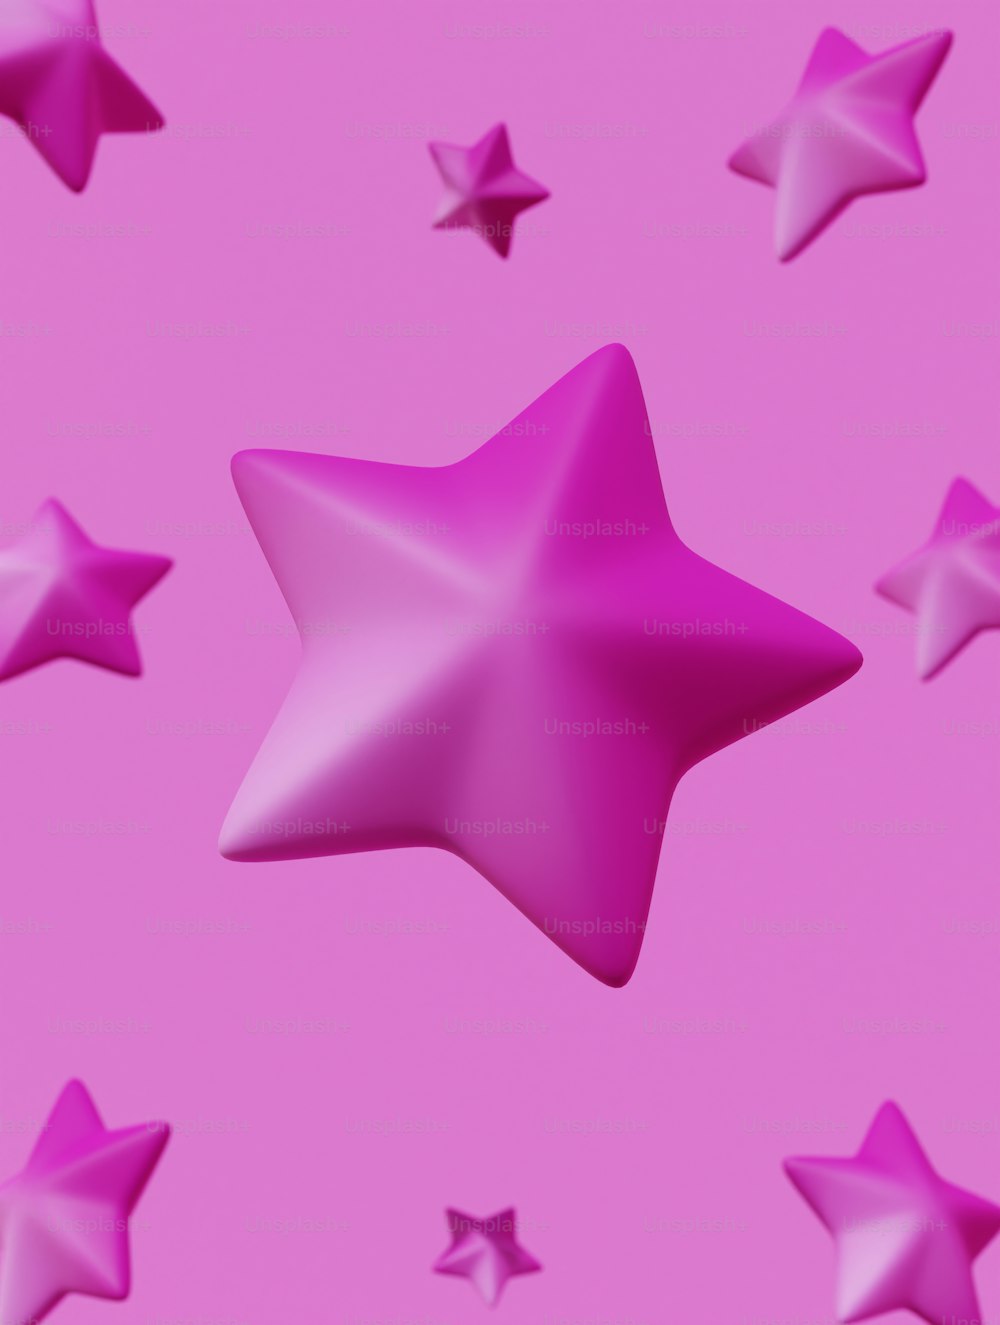 um fundo rosa com muitas estrelas brilhantes